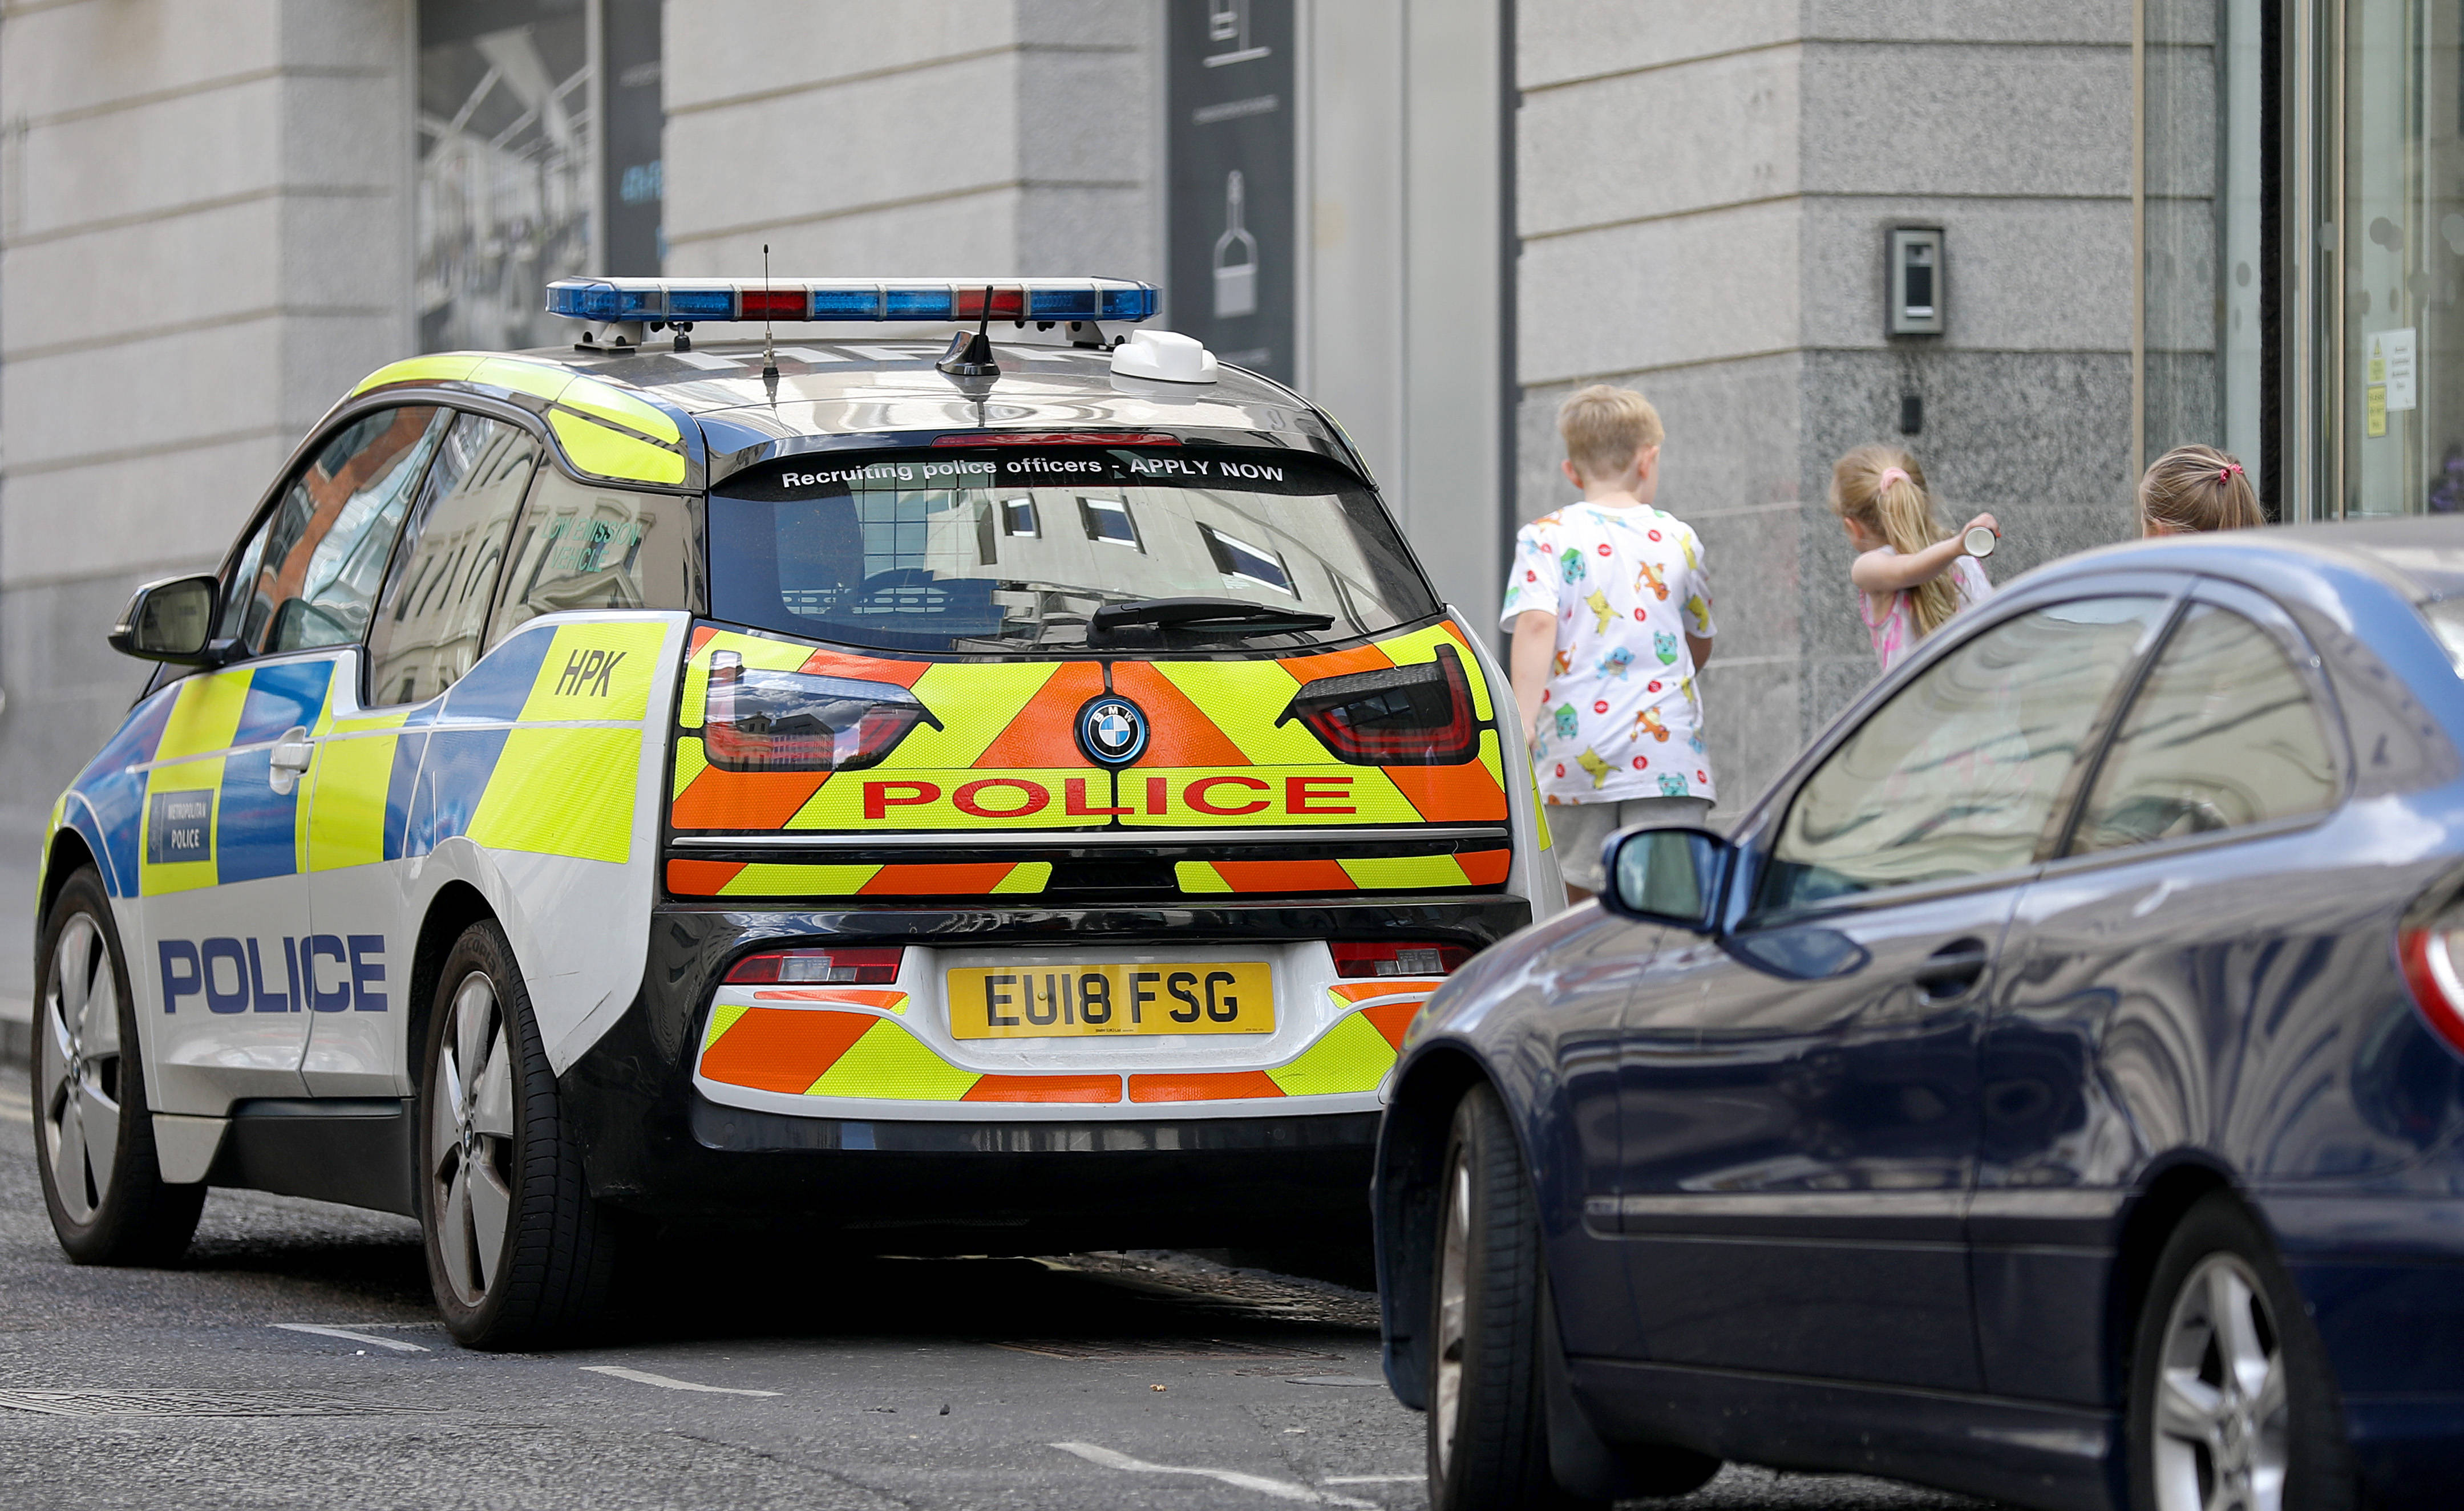 8月8日,在英国伦敦,一辆警车停在警察局门口.返回搜狐,查看更多